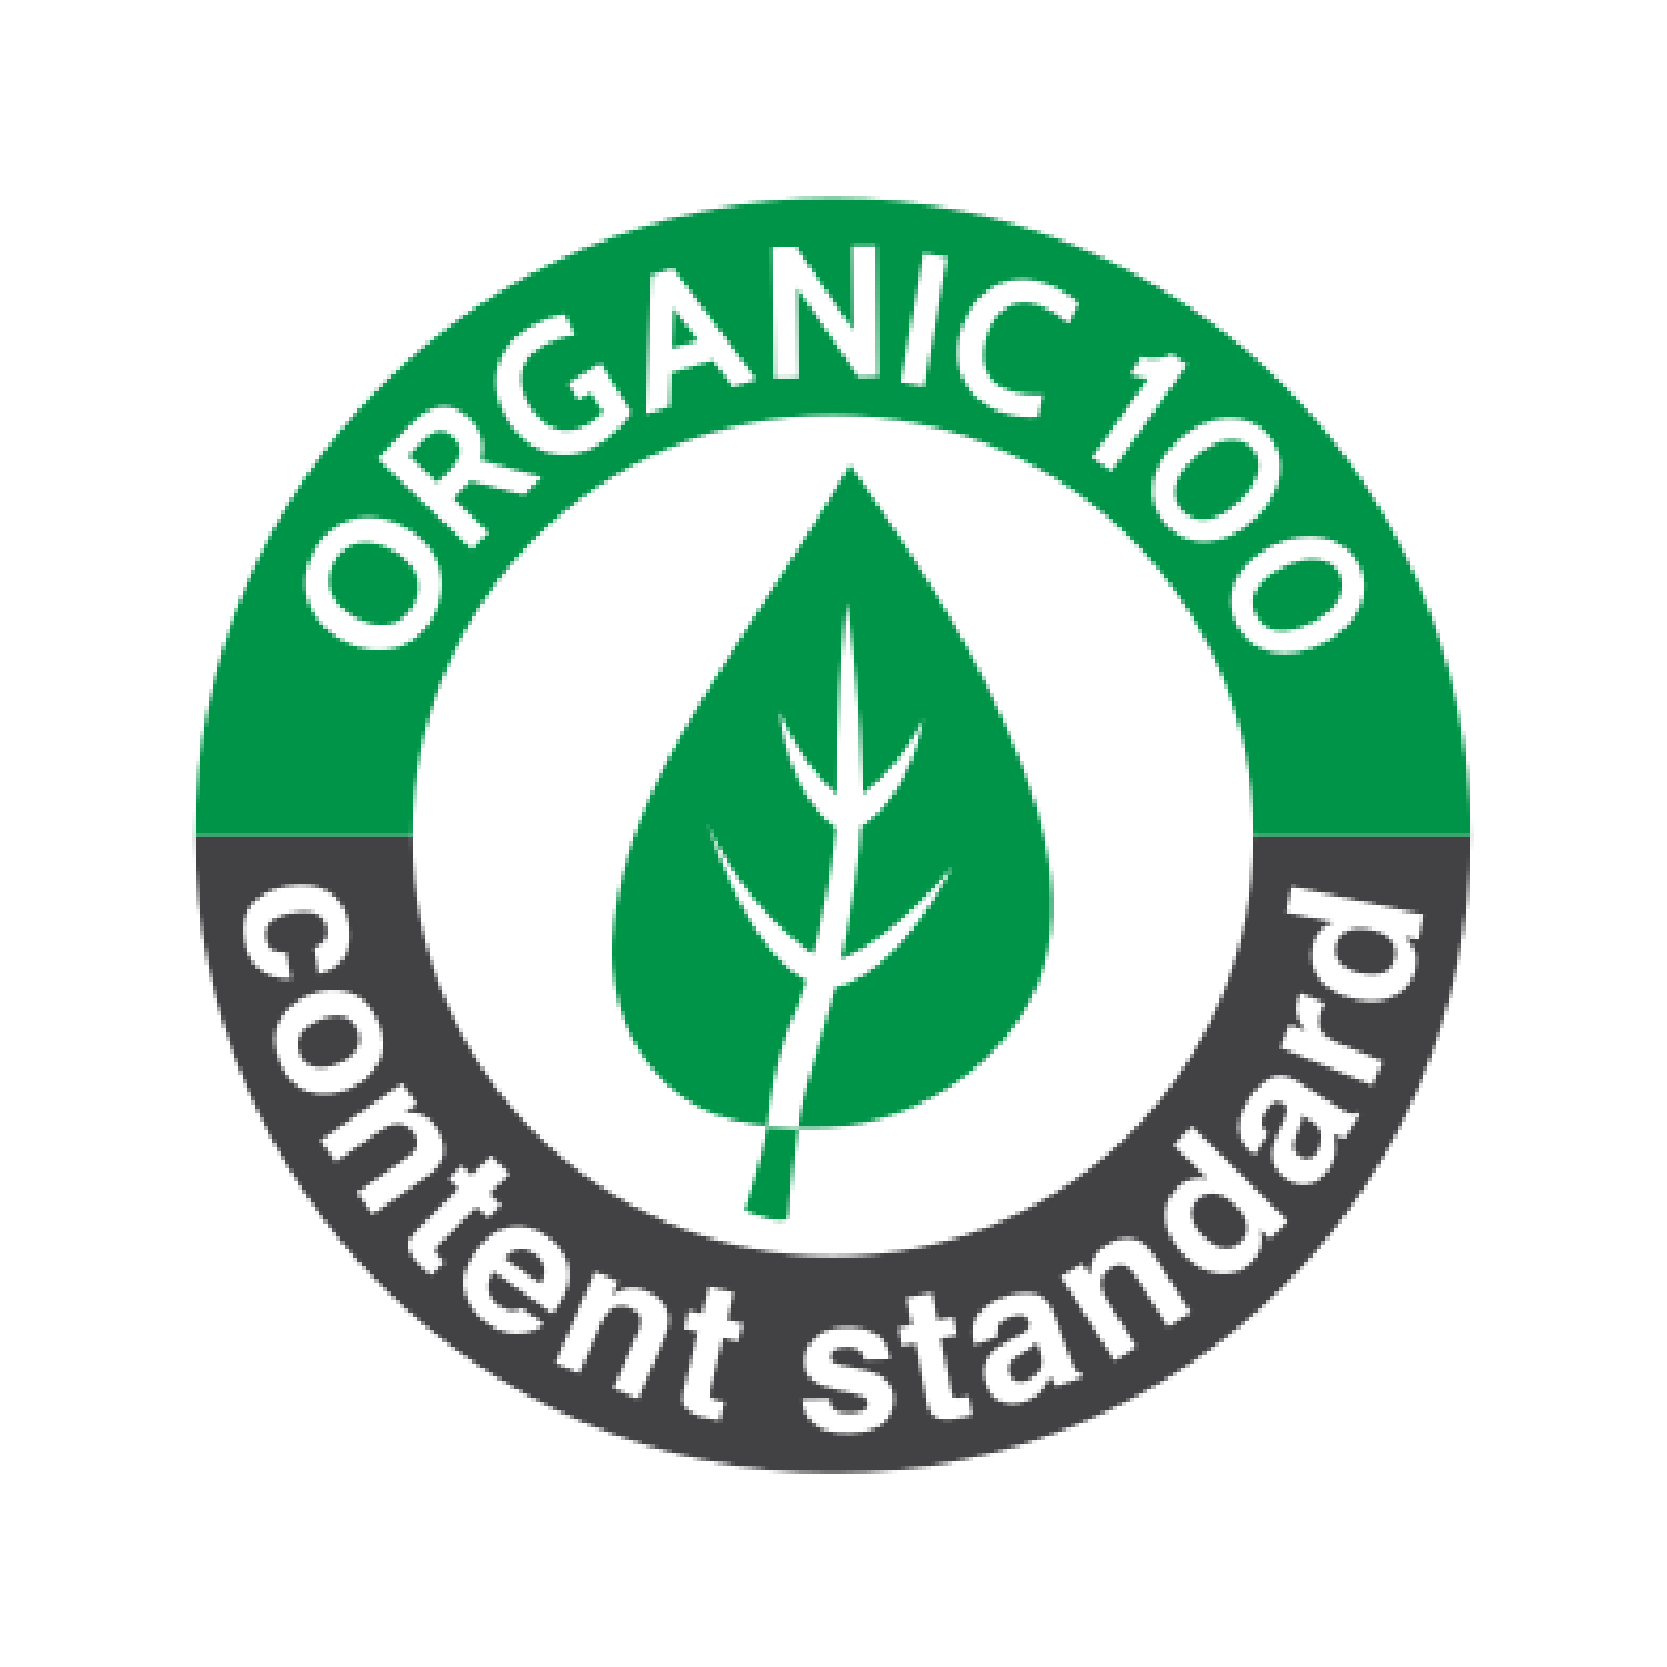 organic100